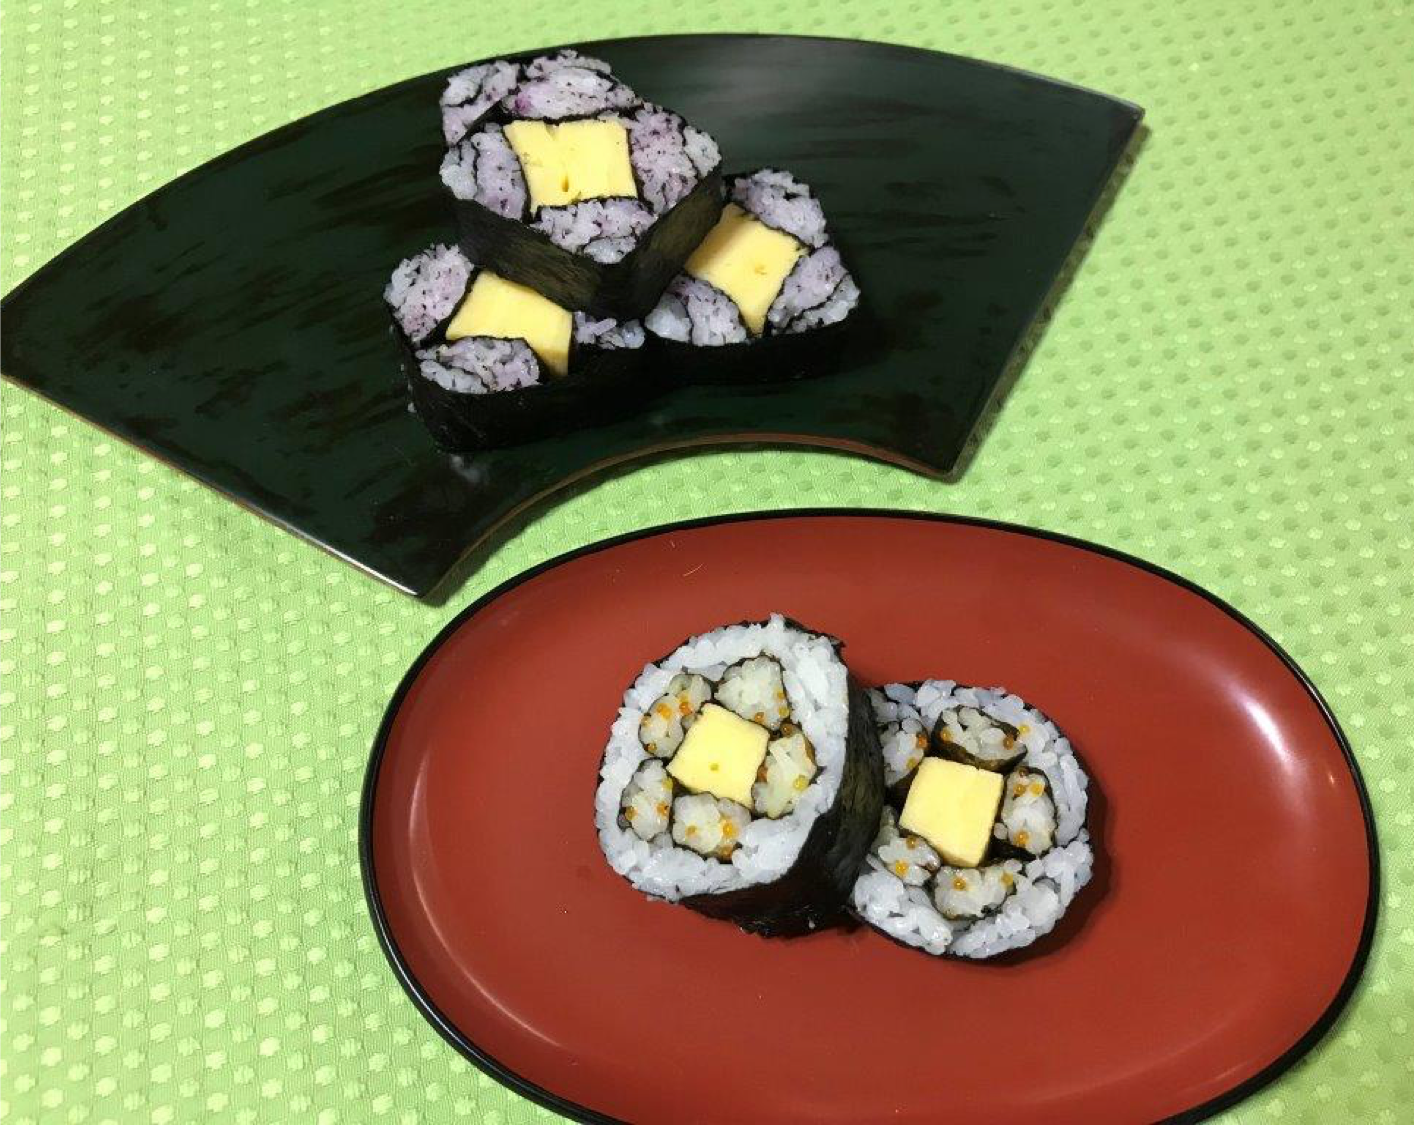 Maki Sushi(Sushi Roll) Making Class